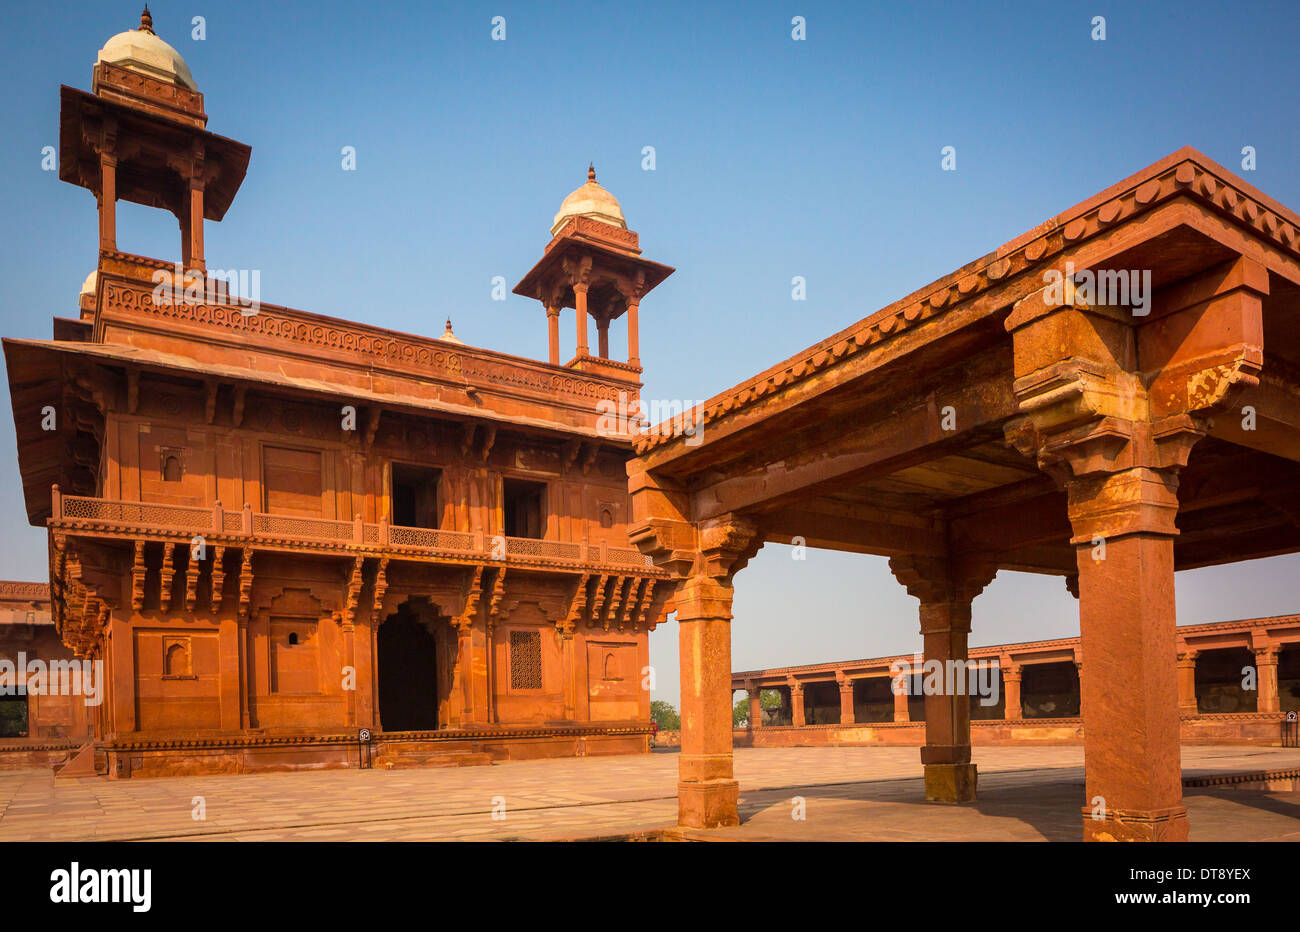 Fatehpur Sikri est une ville et un conseil municipal dans la région d'Agra dans l'état de l'Uttar Pradesh, Inde. Banque D'Images